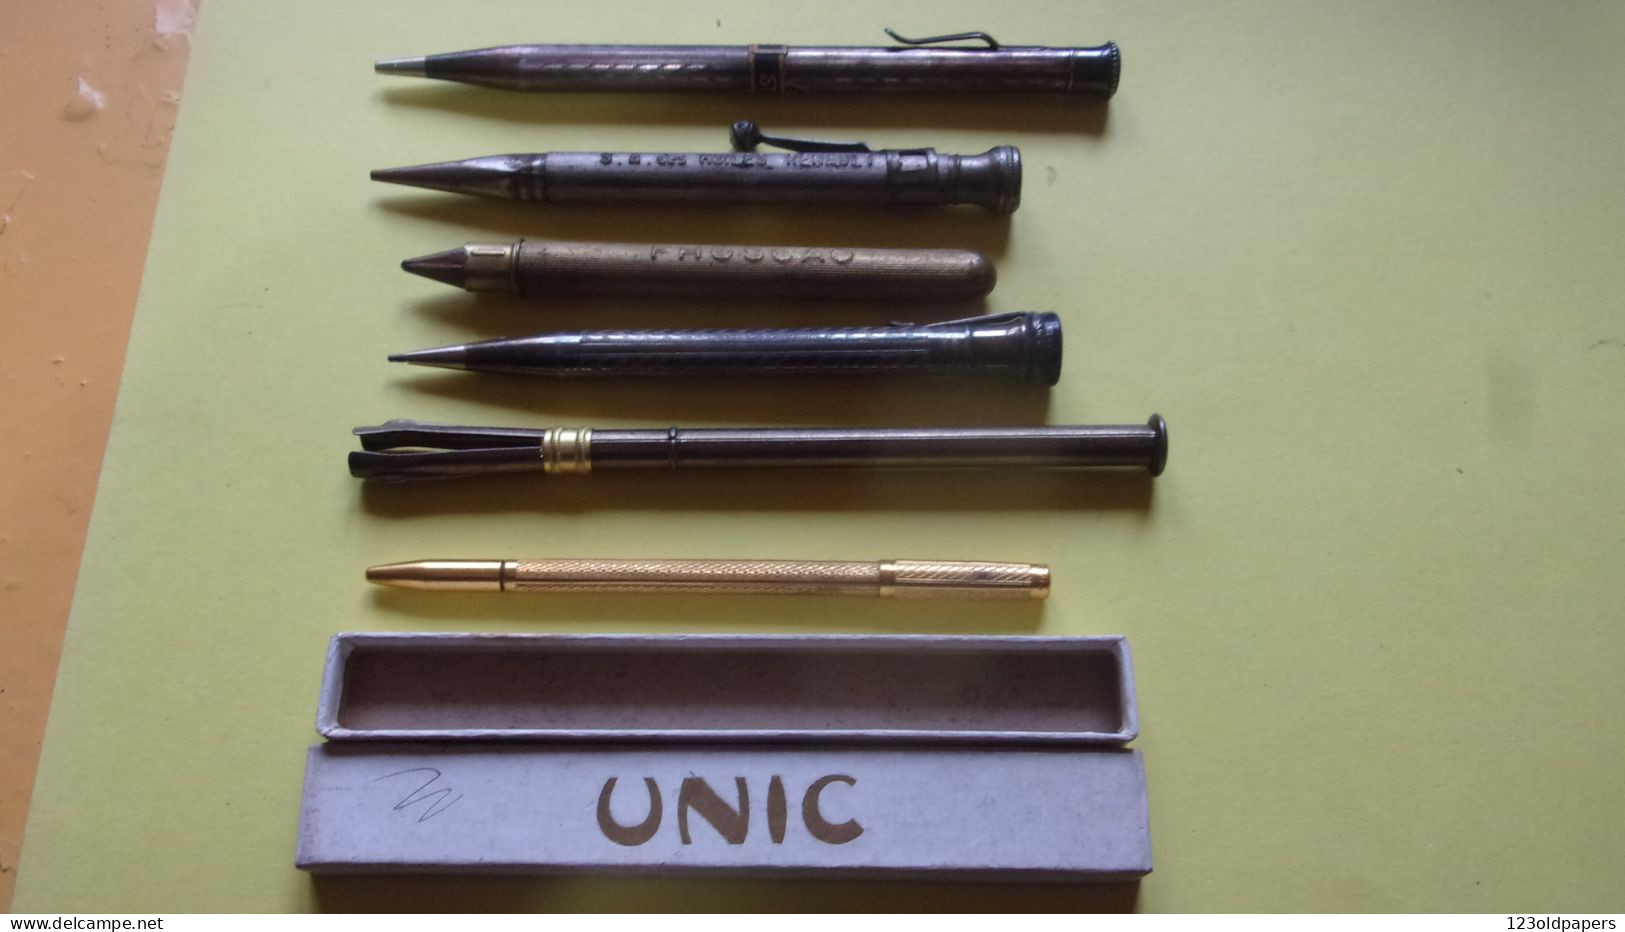 Bic 4 Colour Pen collection. Rare, Vintage and Hard Comoros